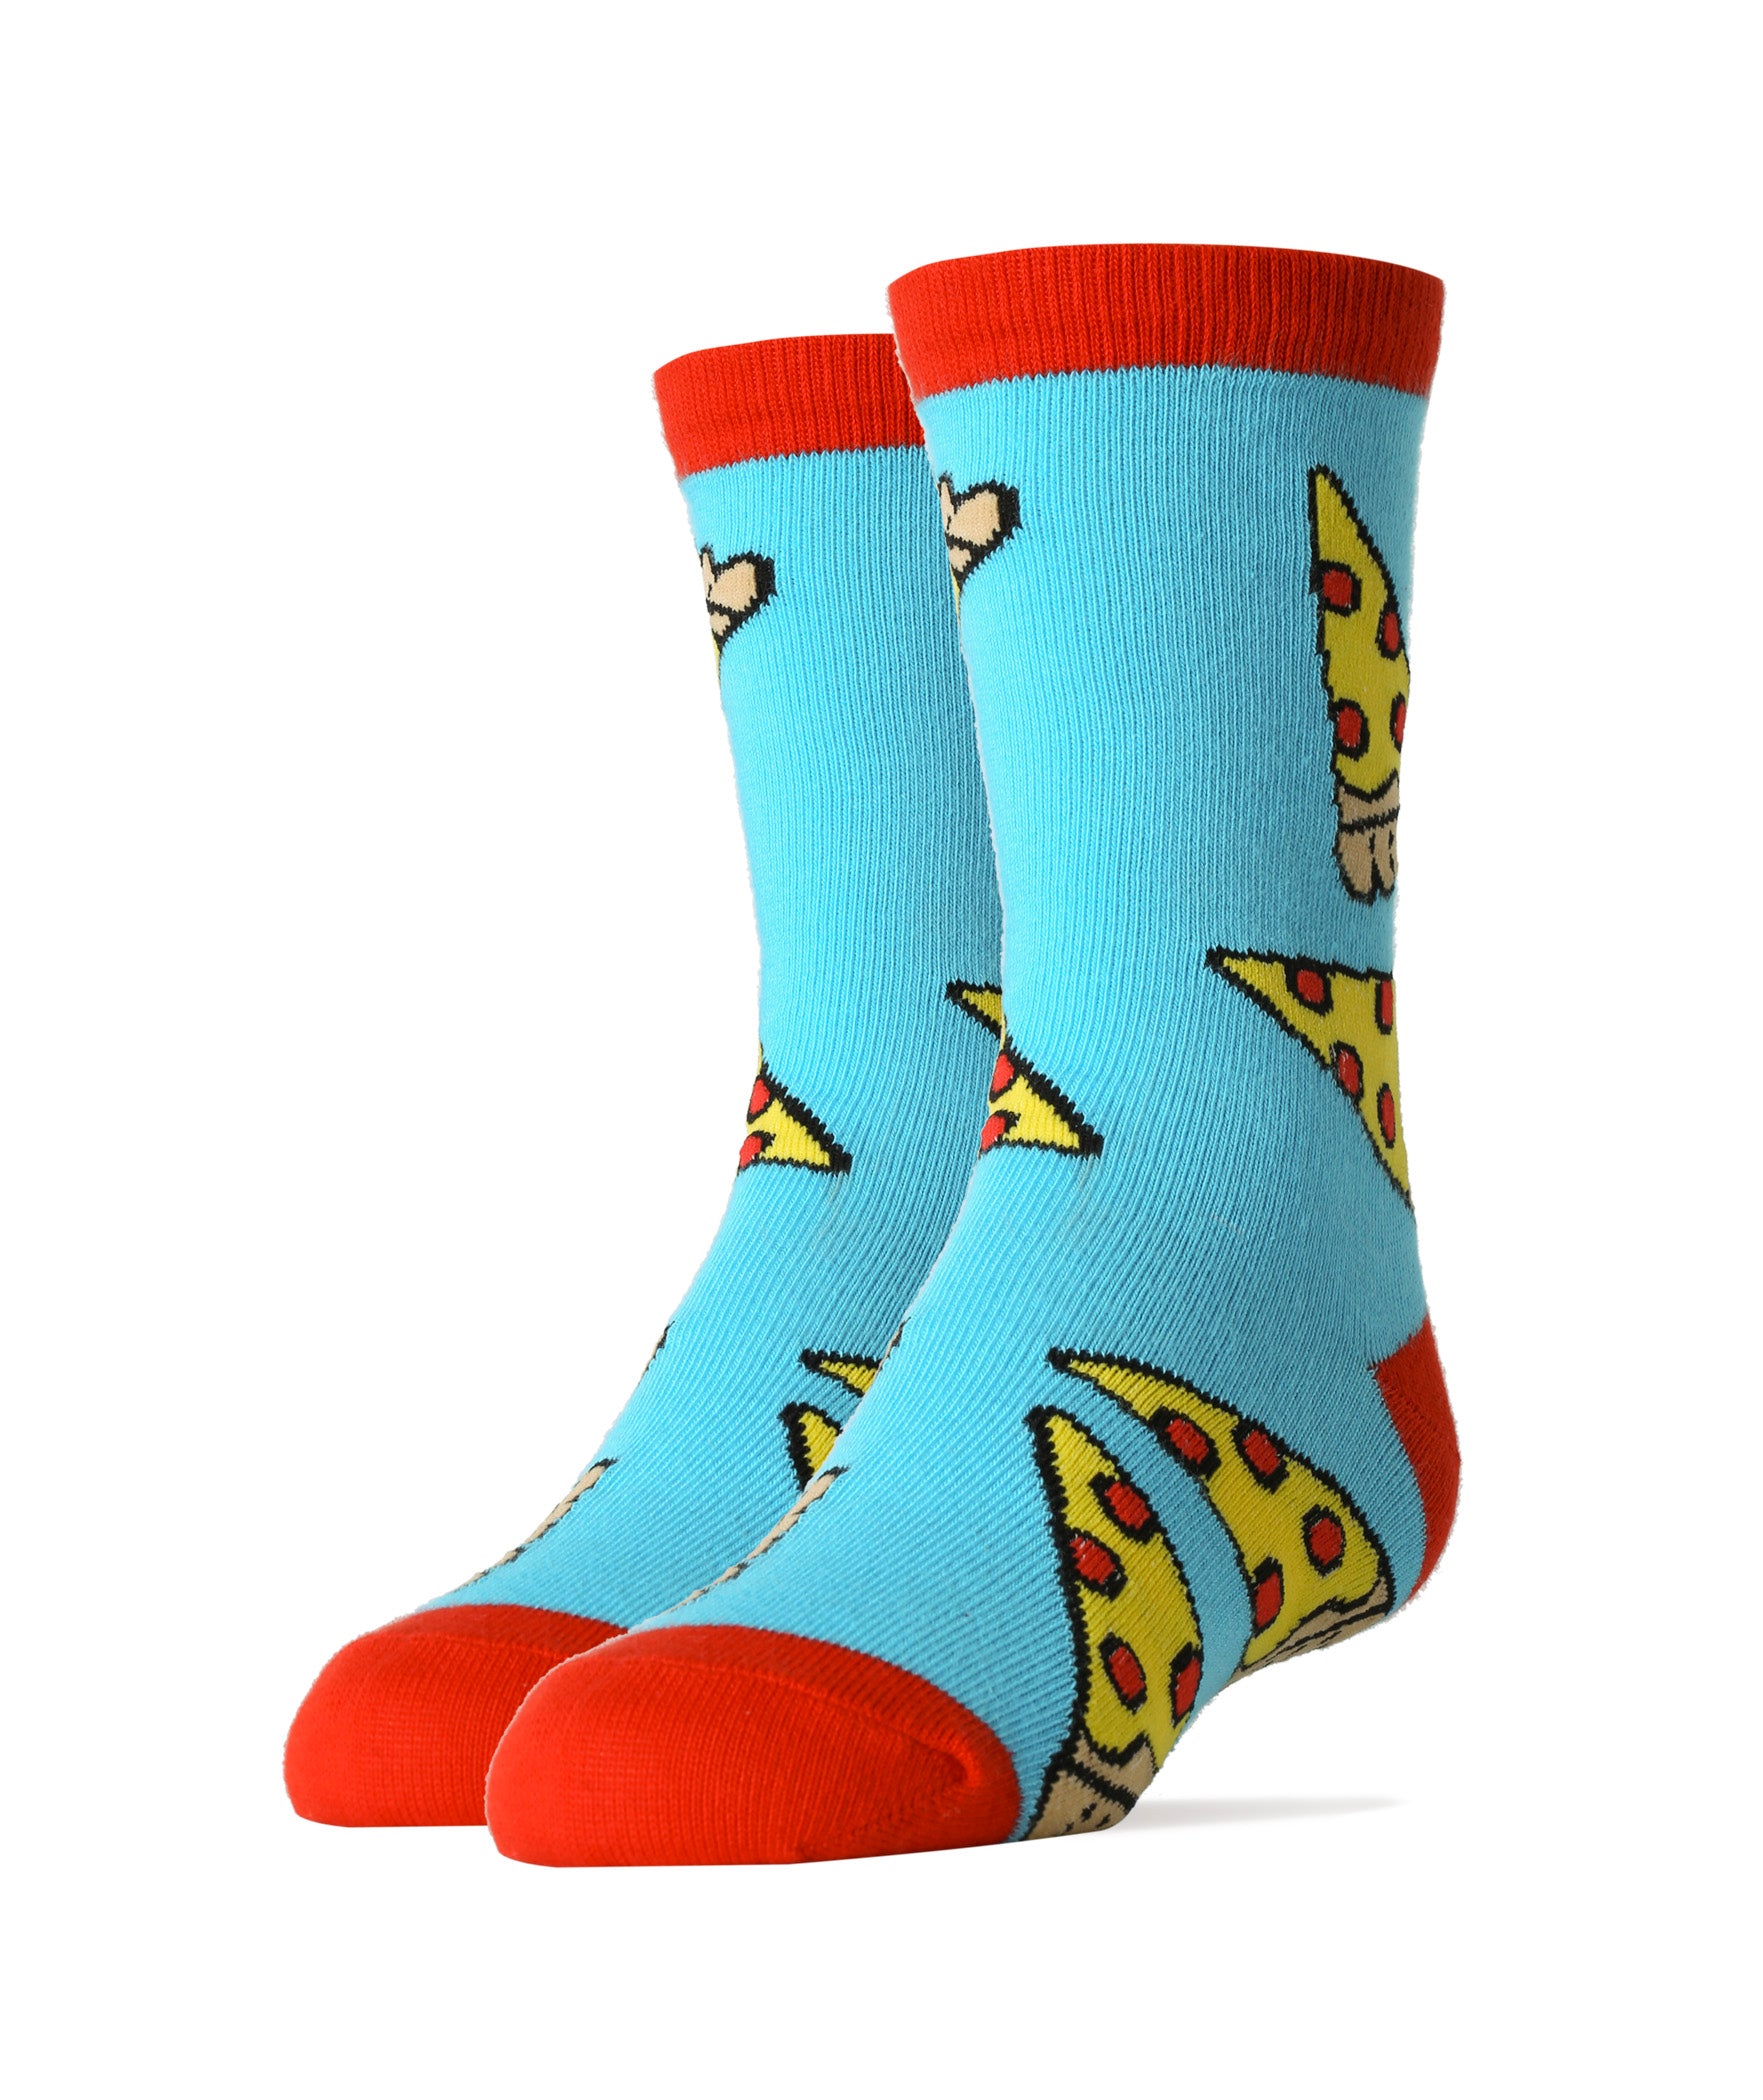 Pizza Party Socks | Novelty Crew Socks for Kids